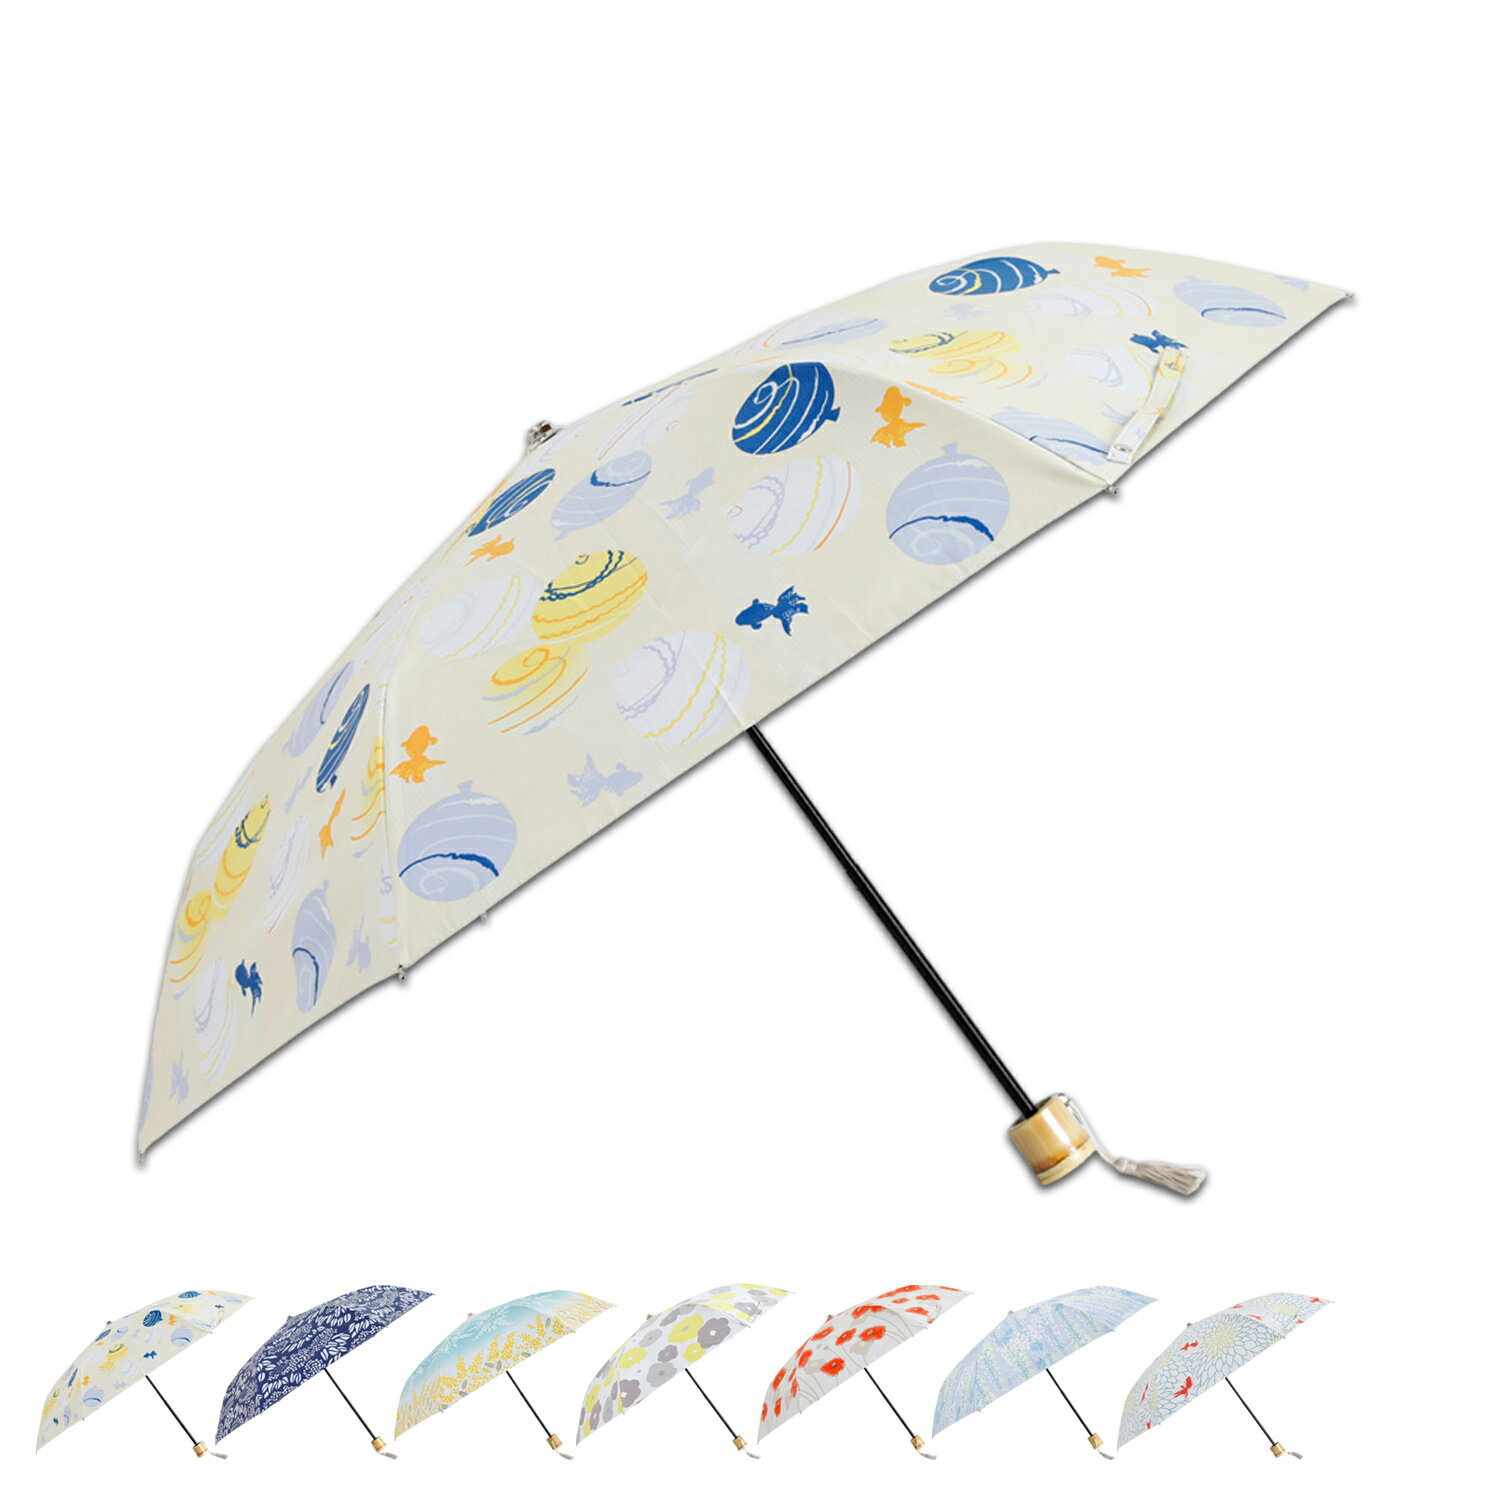 商品説明 【「カバ印の傘カバー」から始まり80年。伝統と現代を繋ぐ和柄の傘ブランド 河馬印本舗】 河馬印本舗の晴雨兼用日傘。ポリエステル80%と綿20%を組み合わせた風合いのある素材に、寒竹の手元にはタッセルが付属します。コンパクトな折り畳み傘で和のイメージを感じれるデザインです。晴雨兼用なので急な雨でも対応し、日差しなどもしっかり防いでくれるサイズになっています。また、畳んだりする際に生地を整える箇所が少ないので、スムーズに開いたり閉じたりすることができます。デザインによって裏面のコーティングが異なります。 ブランド名 / 商品名 河馬印本舗 / FOLDING UMBRELLA 5437 カラー 水風船(薄卵色/うすたまごいろ) あじさい(留紺/とめこん) ミモザ(水色/みずいろ) 花(金糸雀色/かなりあいろ) ポピー(京緋色/きょうひいろ) 藤(薄紅藤/うすべにふじ) 金魚(金赤/きんあか) 素材 / 仕様 ポリエステル 80% 綿 20% 内側：ポリウレタンコーティング 開閉方法：手動式 留め具：面ファスナー 重量：246g 生産国 - サイズ 親骨の長さ：50cm 全体の長さ：65cm 直径：92cm 持ち手の長さ：10cm 持ち手の太さ：2cm 収納時の長さ：41cm 共袋：6.5cm×31cm こちらの商品は、メーカー公式の採寸基準で計測しています。 ご購入前に必ずお読みください サイズ・仕様について 平置きして採寸したサイズになります。商品によっては若干の誤差が生じてしまう場合がございます。また、商品やブランド等によりサイズが異なります。（単位はcmになります。) 外装箱や商品に若干のへたりや傷がある場合があります。 また、生産工場や生産時期で細かい仕様変更がある場合がありますのでご注意ください。　　 カラーについて 個体ごとに若干の差異がある場合がございます。可能な限り現物に近い色味の写真を掲載をしておりますが、お客様のモニターの設定などにより現物との色味に差異が生じる場合もございます。あらかじめご了承ください。 予約商品の納期発送目安について 予約商品の納期発送目安は、以下の通りになります。 上旬：1日-10日頃発送予定 中旬：11日-20日頃発送予定 下旬：21日-末日頃発送予定 ※目安になりますので、日程が多少前後する場合があります。 類似商品はこちら 河馬印本舗 日傘 折りたたみ 遮光 晴雨兼用4,950円 MOOMIN FOLDING UMBRELL3,850円 SNOOPY FOLDING UMBRELL3,850円NINA RICCI FOLDING UMBR12,100円 河馬印本舗 カバジルシホンポ 日傘 長傘 遮4,950円 NINA RICCI FOLDING UMB9,900円 SNOOPY VINYL UMBRELLA 3,850円 NINA RICCI FOLDING UMB12,100円JILLSTUART FOLDING UMBR13,200円新着商品はこちら2024/5/12 BIRKENSTOCK BOSTON ビルケ19,000円2024/5/12 NIKE ナイキ コルテッツ スニーカー メ11,330円2024/5/12 adidas Originals STAN 15,800円再販商品はこちら2024/5/12 Orobianco PU LEATHER B3,500円2024/5/12 le coq sportif LCS REU6,400円2024/5/12 VANS OLD SKOOL TAPERED8,000円2024/05/13 更新 類似商品はこちら 河馬印本舗 日傘 折りたたみ 遮光 晴雨兼用4,950円 MOOMIN FOLDING UMBRELL3,850円 SNOOPY FOLDING UMBRELL3,850円新着商品はこちら2024/5/12 BIRKENSTOCK BOSTON ビルケ19,000円2024/5/12 NIKE ナイキ コルテッツ スニーカー メ11,330円2024/5/12 adidas Originals STAN 15,800円再販商品はこちら2024/5/12 Orobianco PU LEATHER B3,500円2024/5/12 le coq sportif LCS REU6,400円2024/5/12 VANS OLD SKOOL TAPERED8,000円